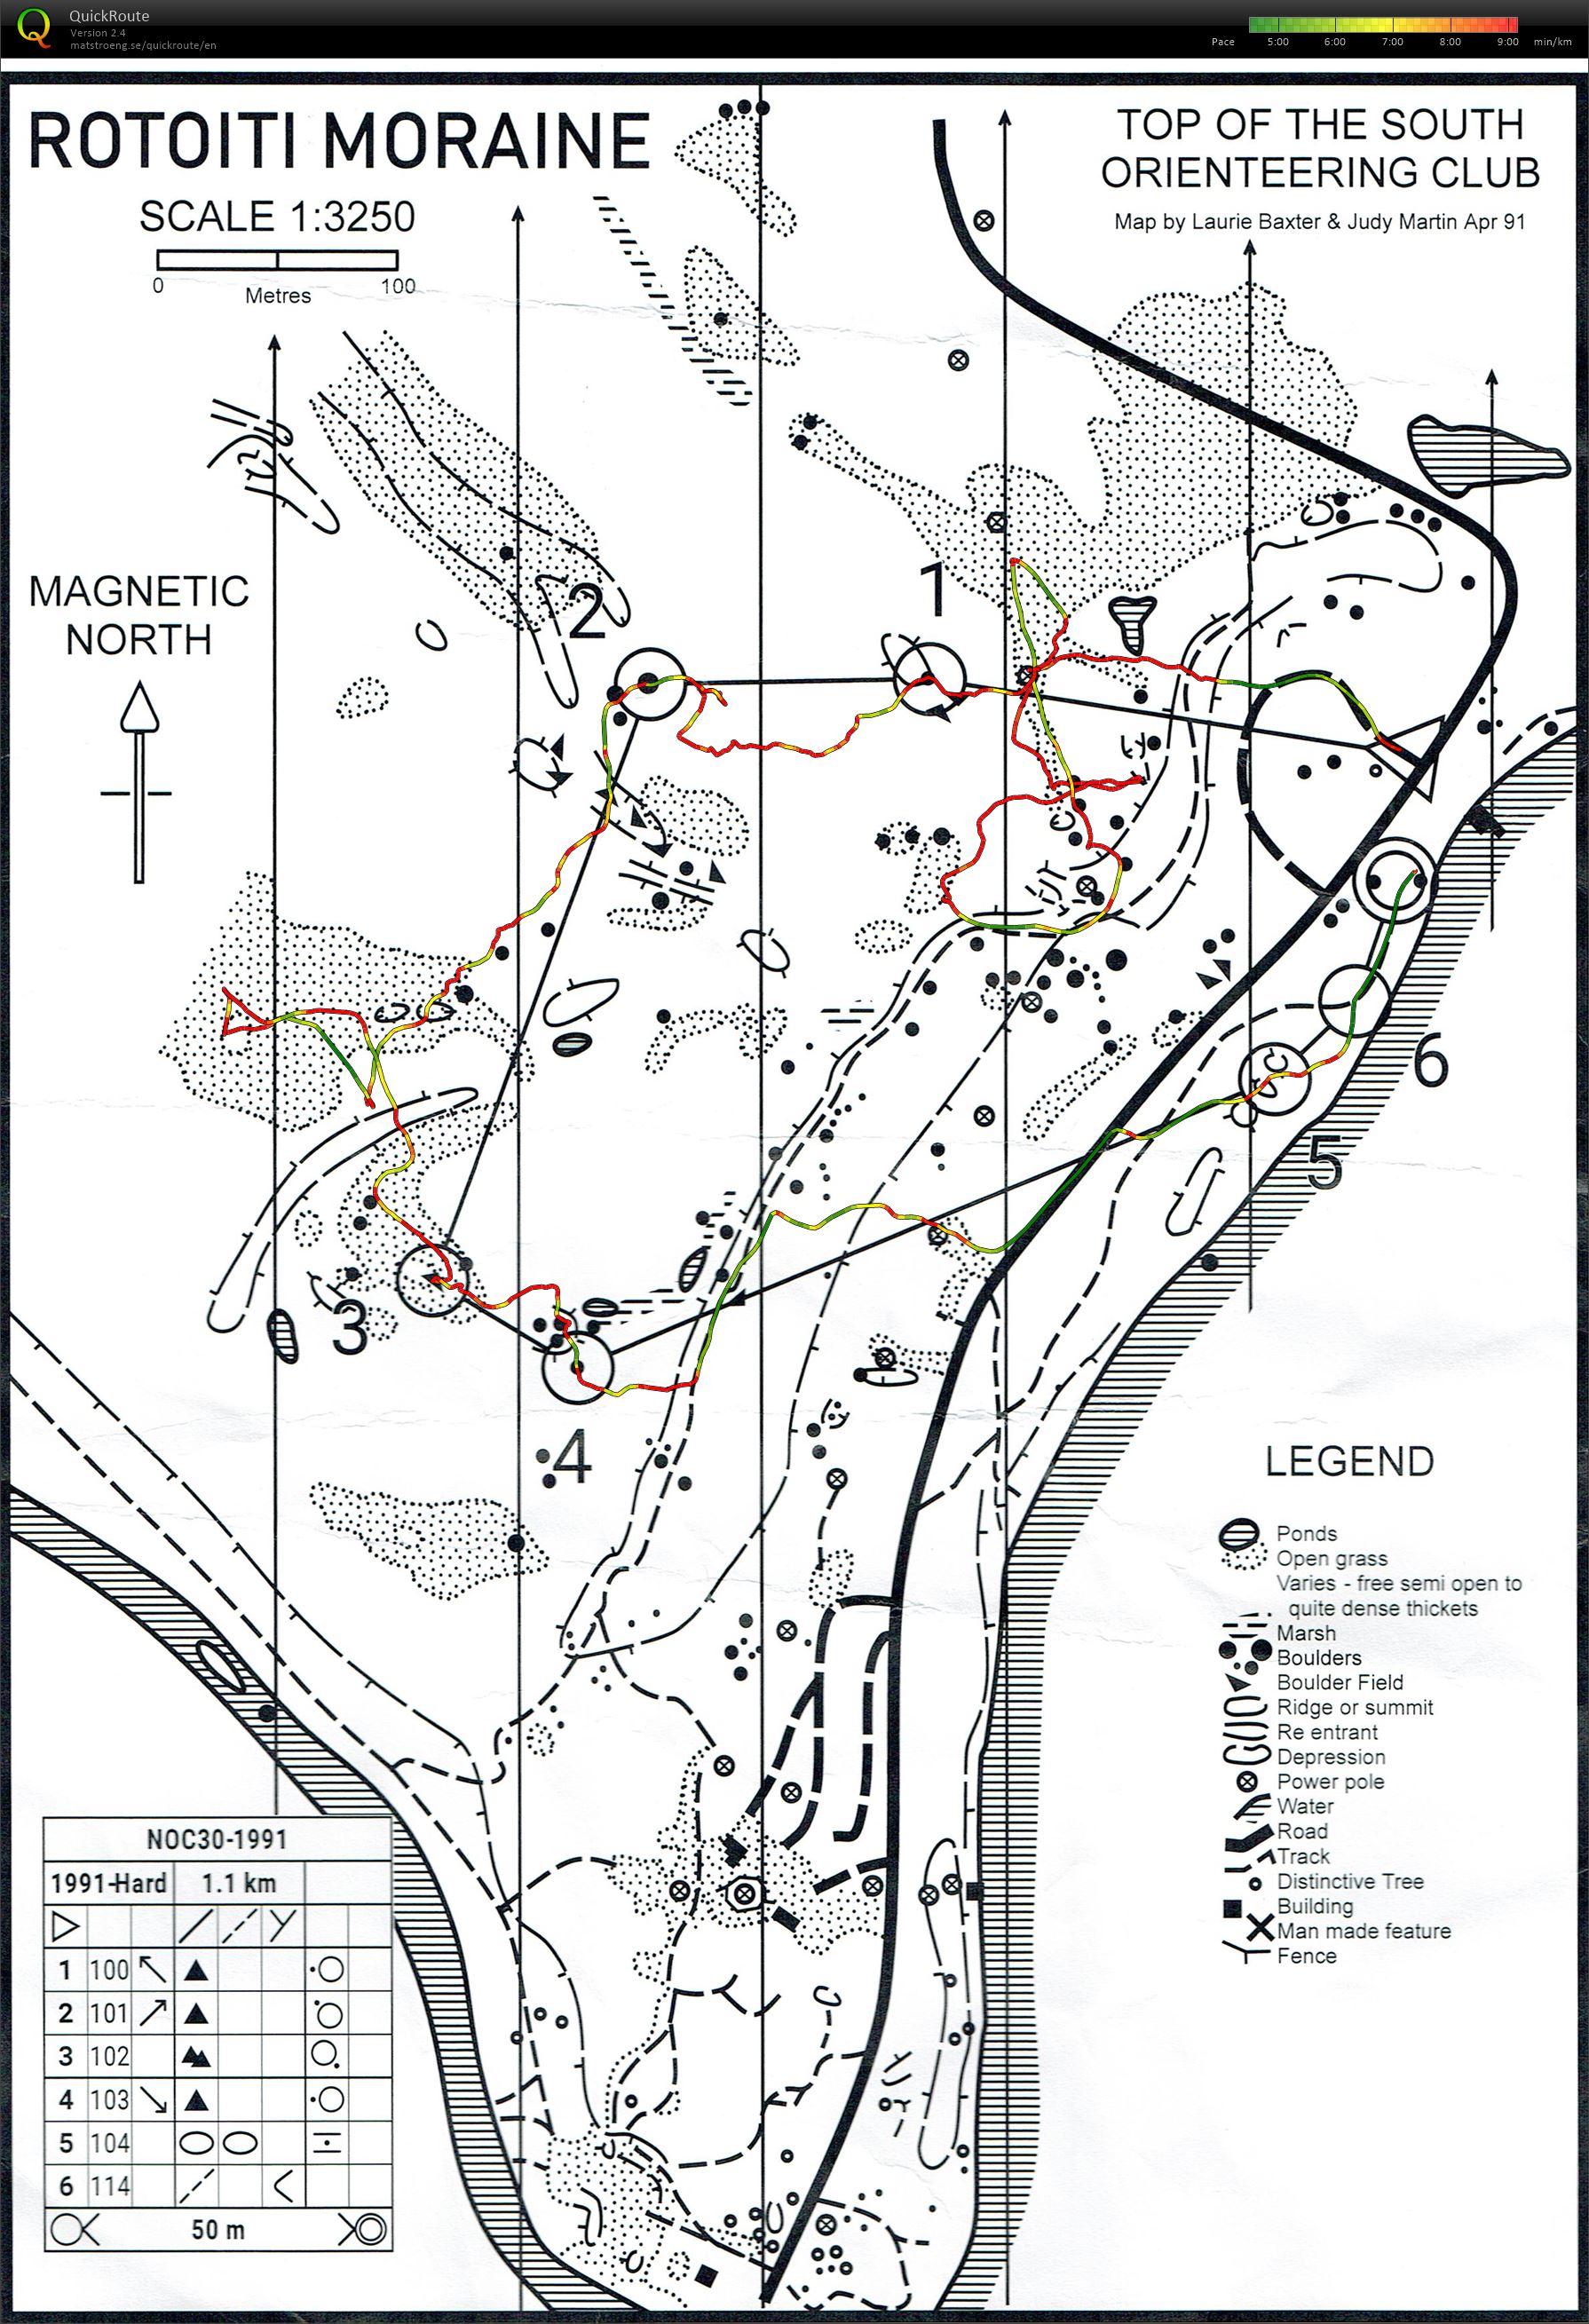 NOC30 - Loop 4 - 1991 Map (2022-06-18)